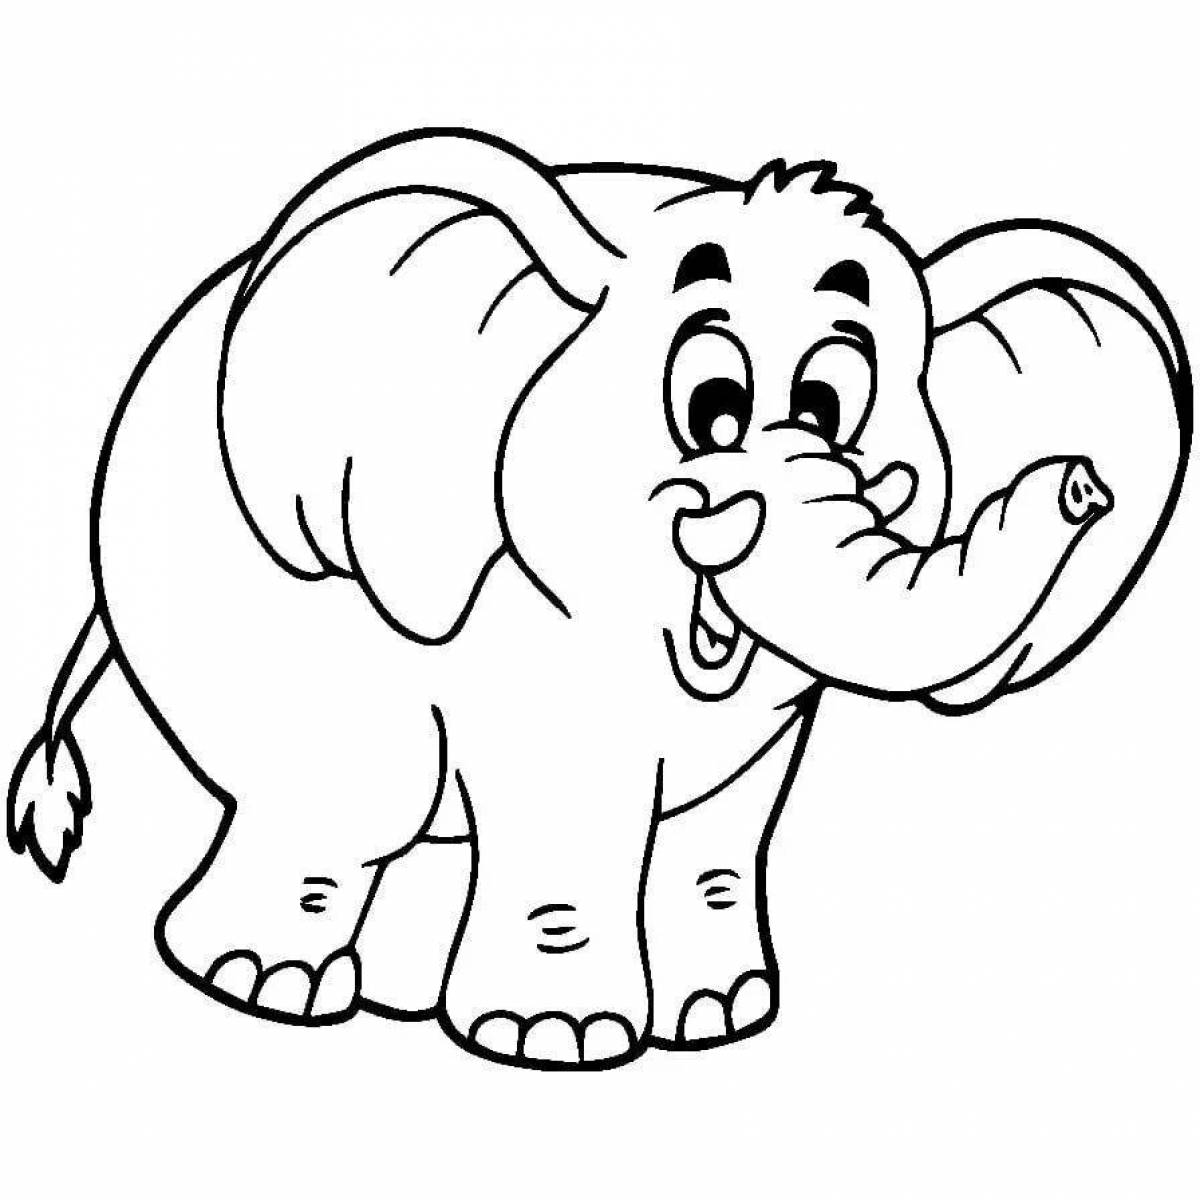 Изысканная раскраска слонов для детей